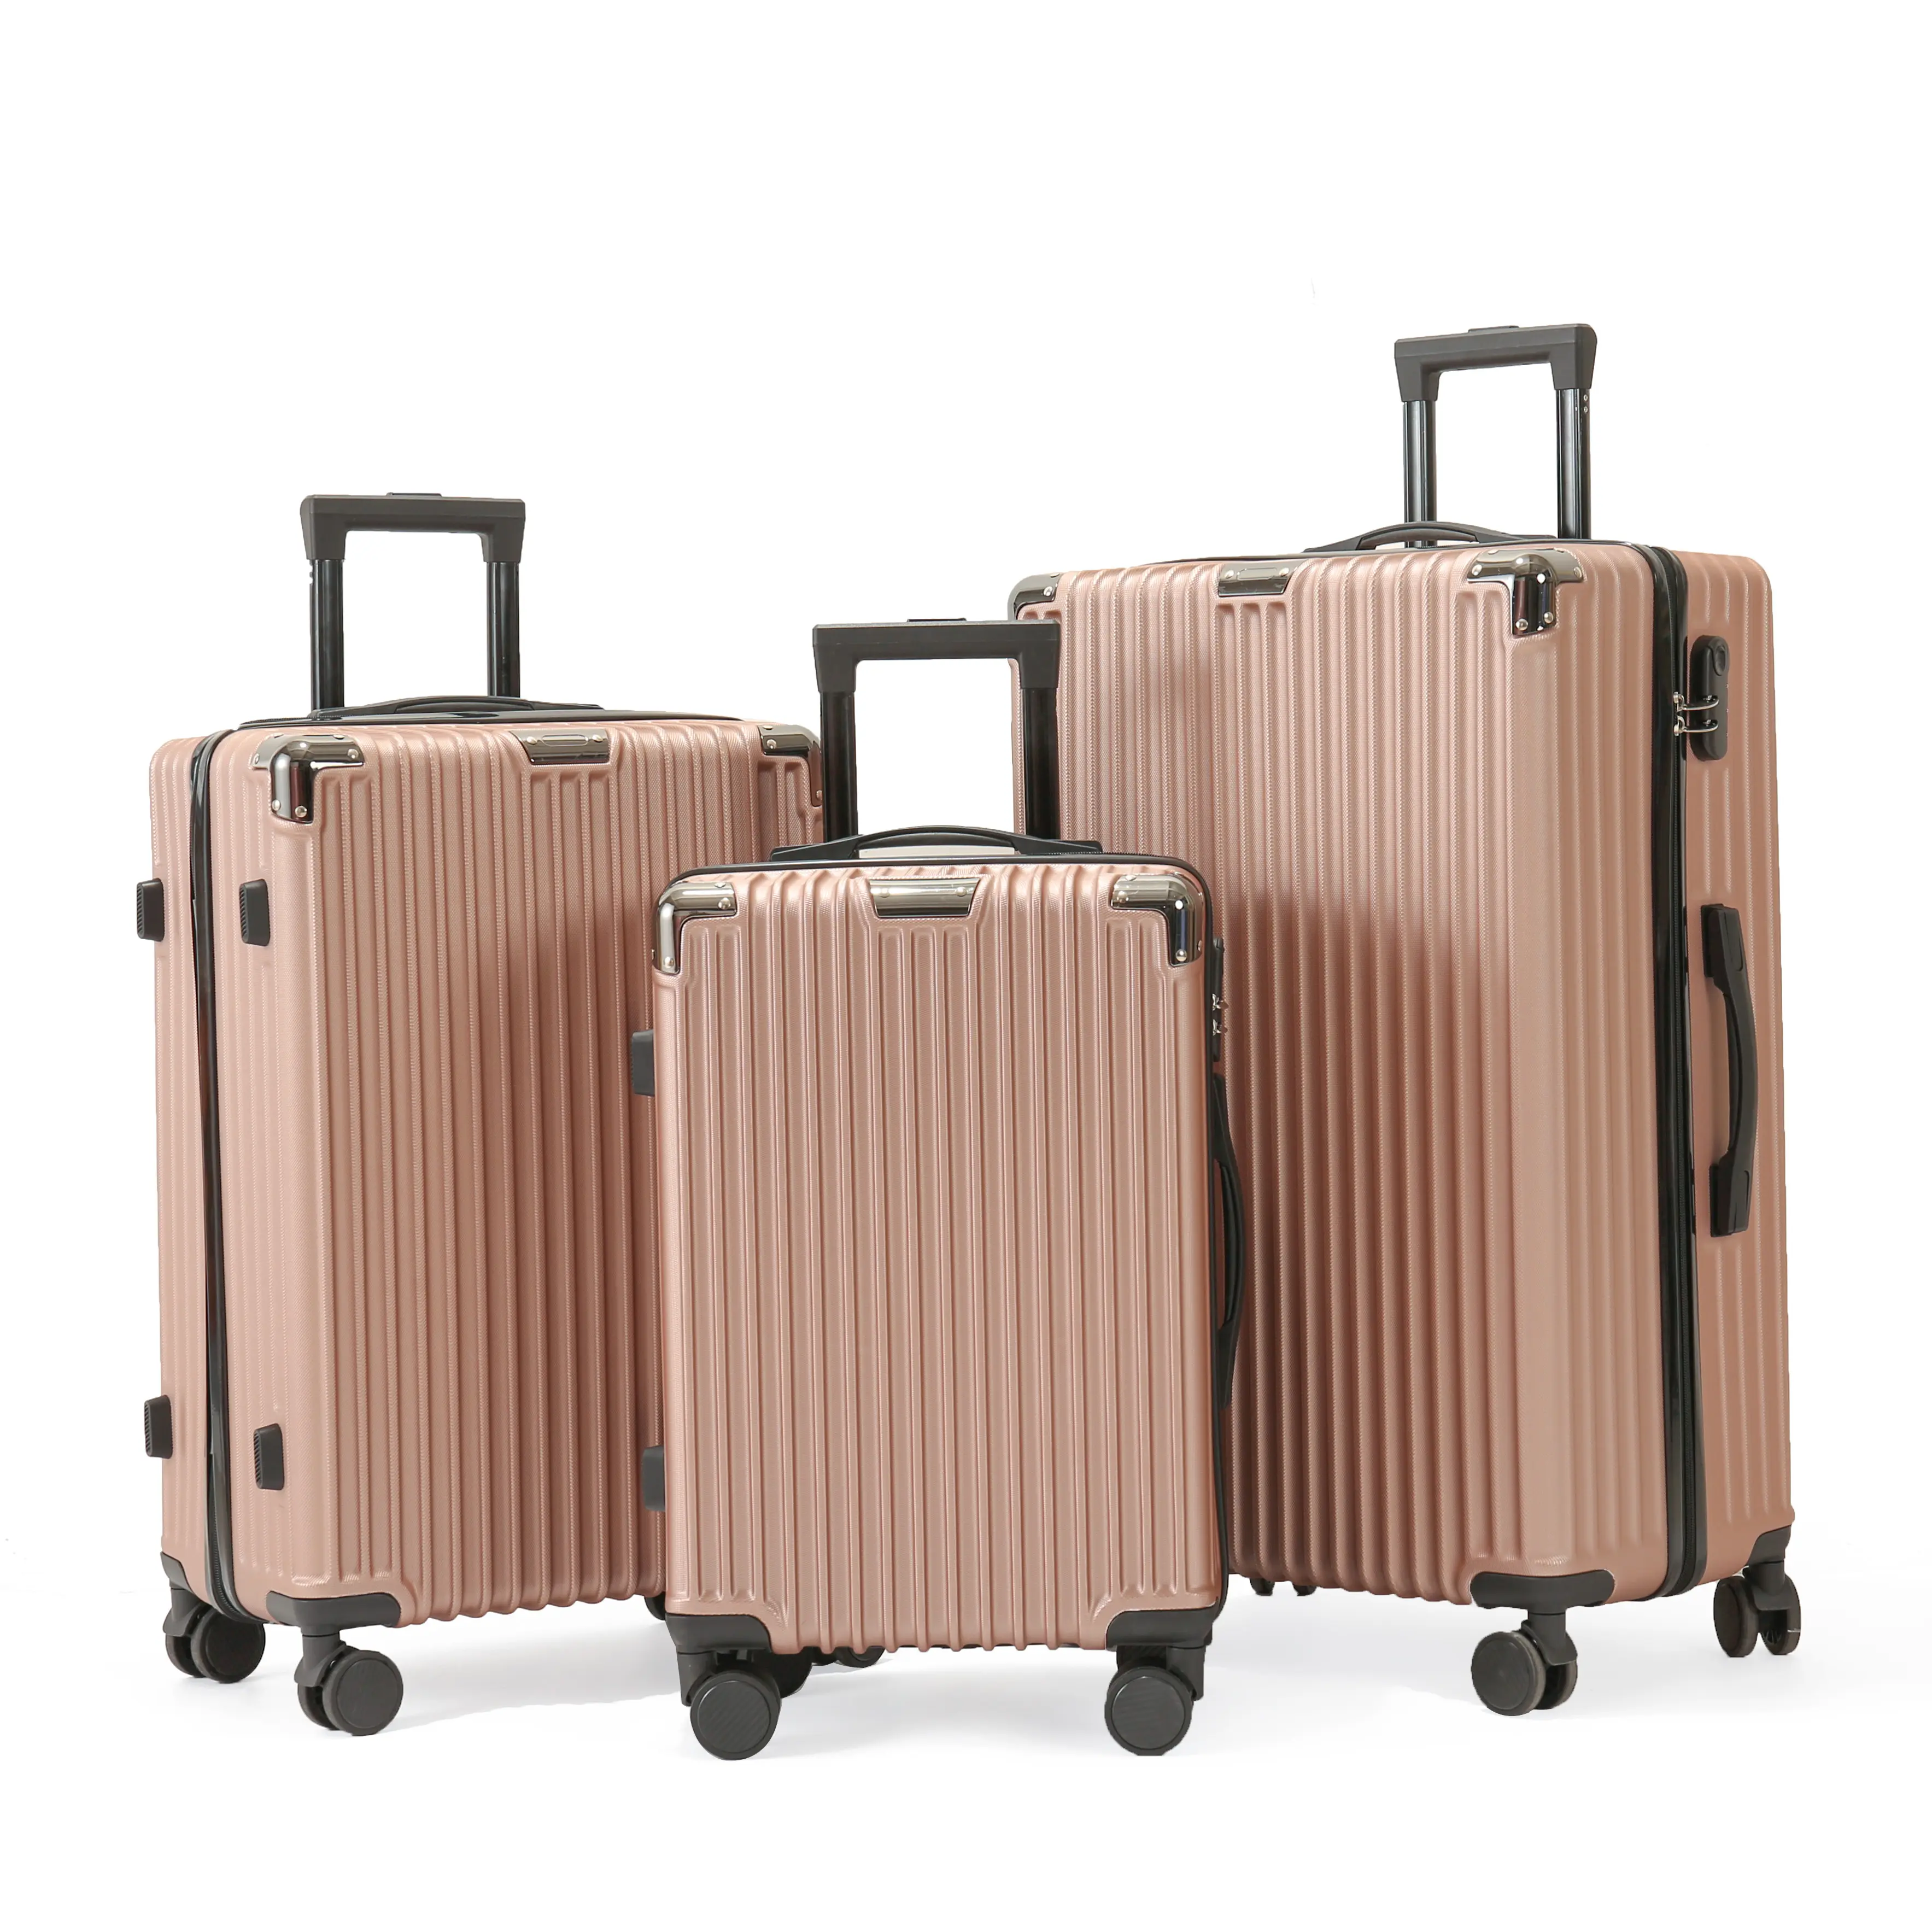 Modedesign heißer Verkauf Koffer Benutzer definiertes Logo Abs Trolley Gepäck große Kapazität Hartsc halen gepäck taschen reisen